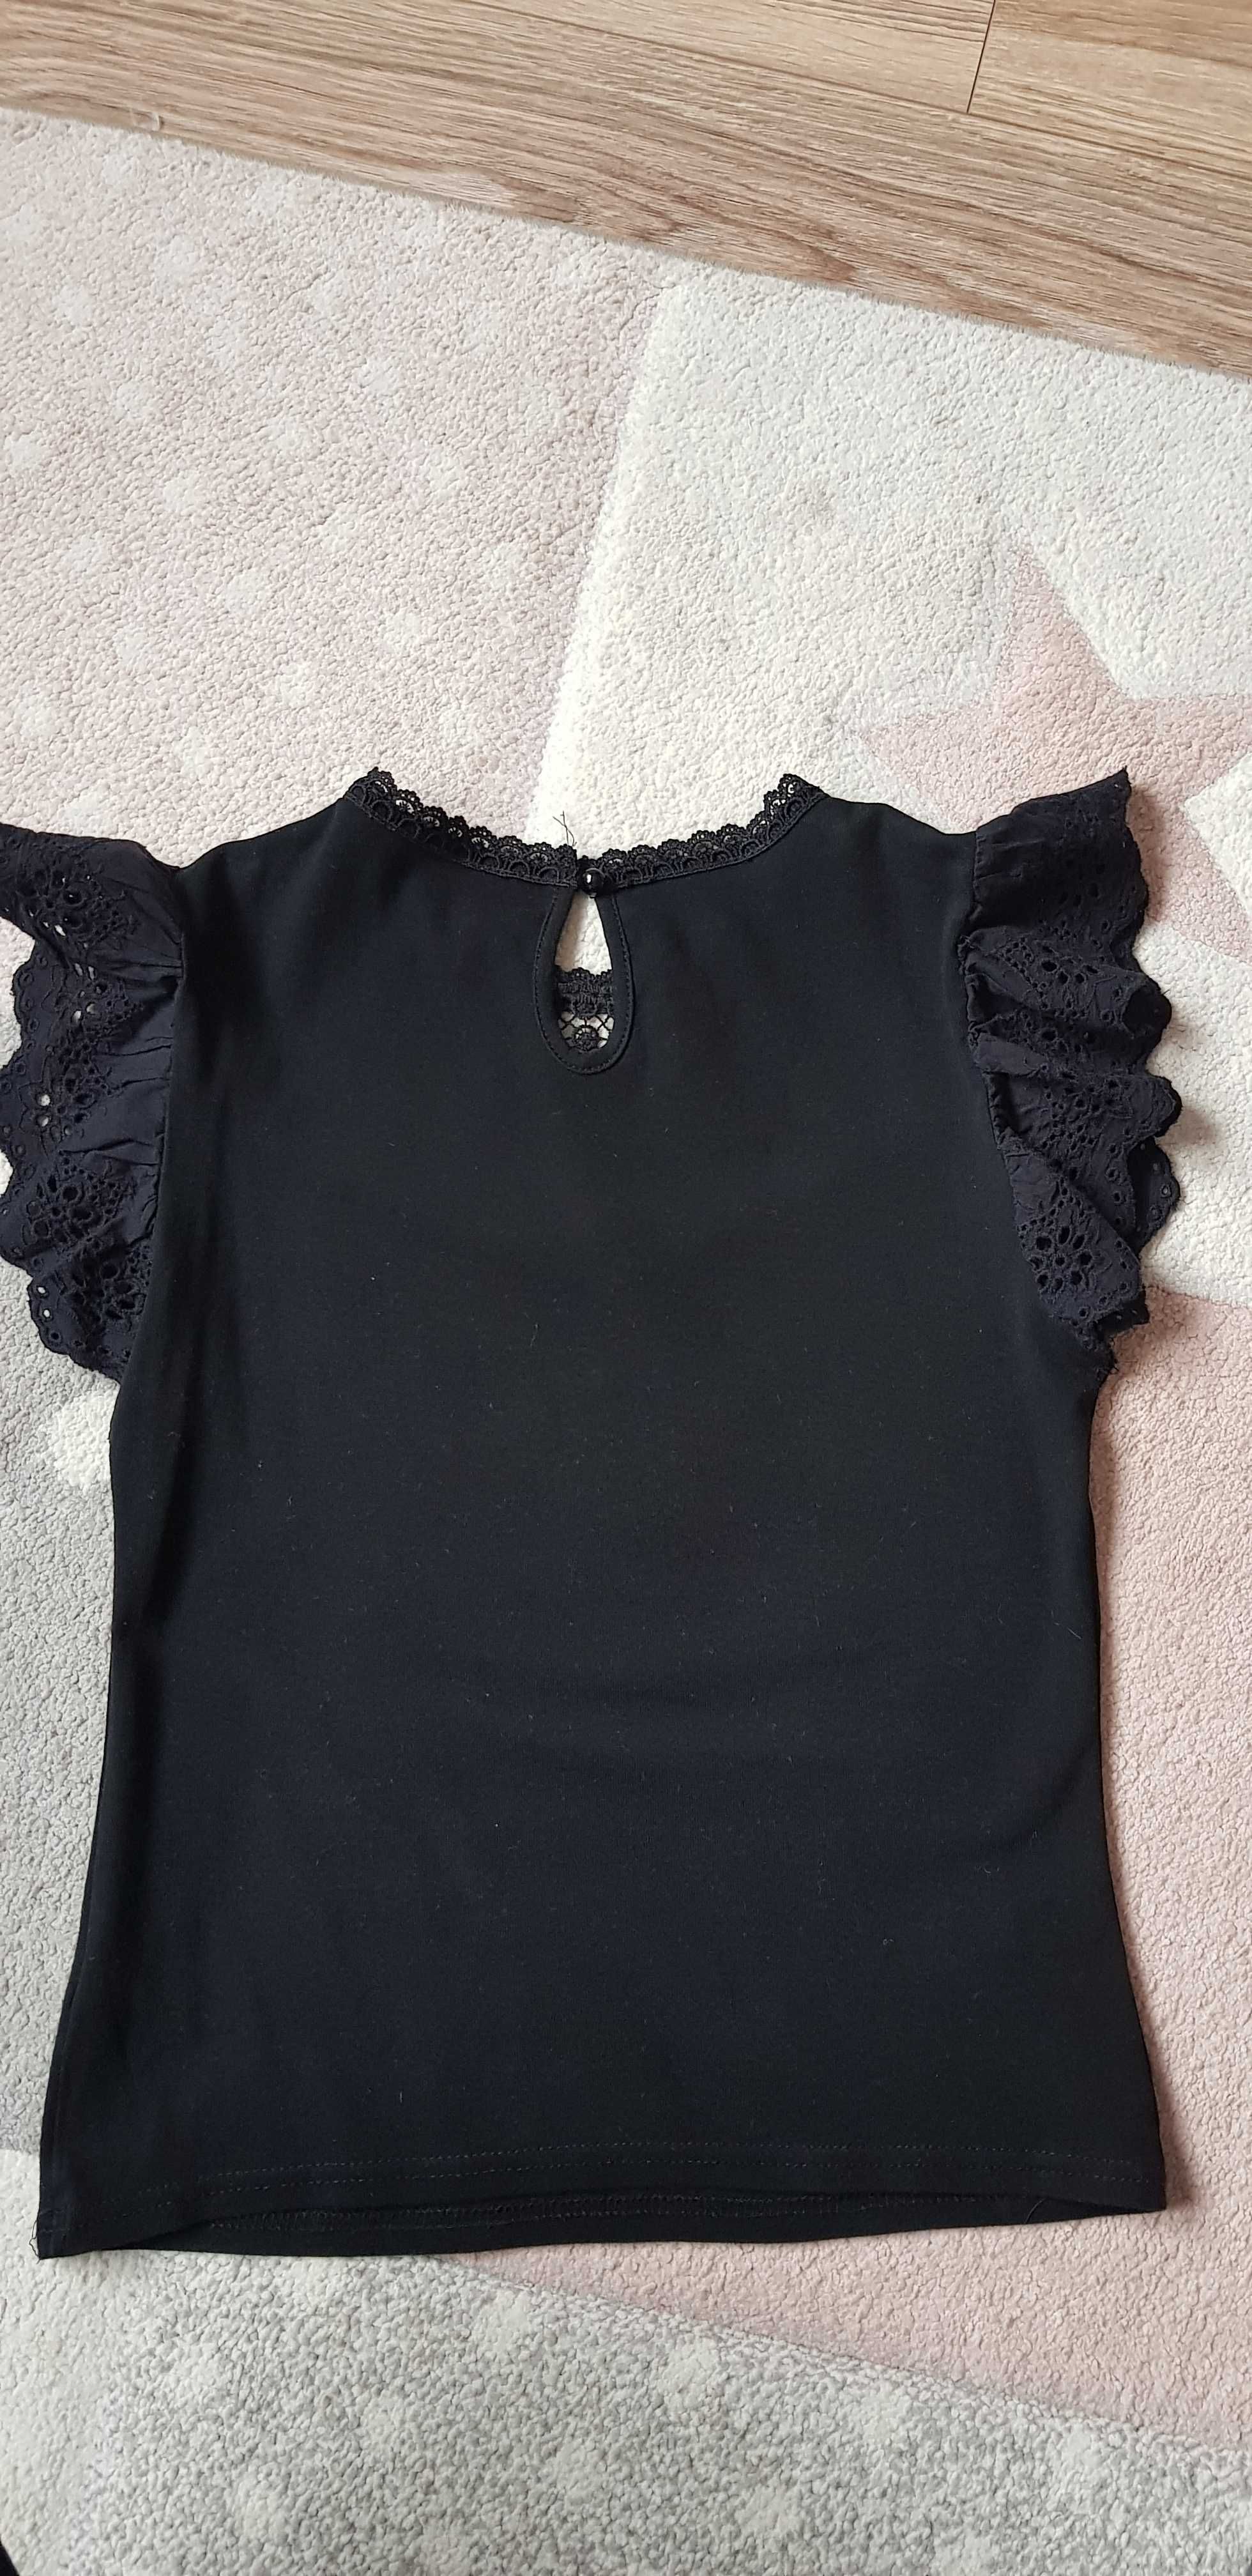 Czarna letnia bluzka damska z falbanami ażurowa r. 36 S